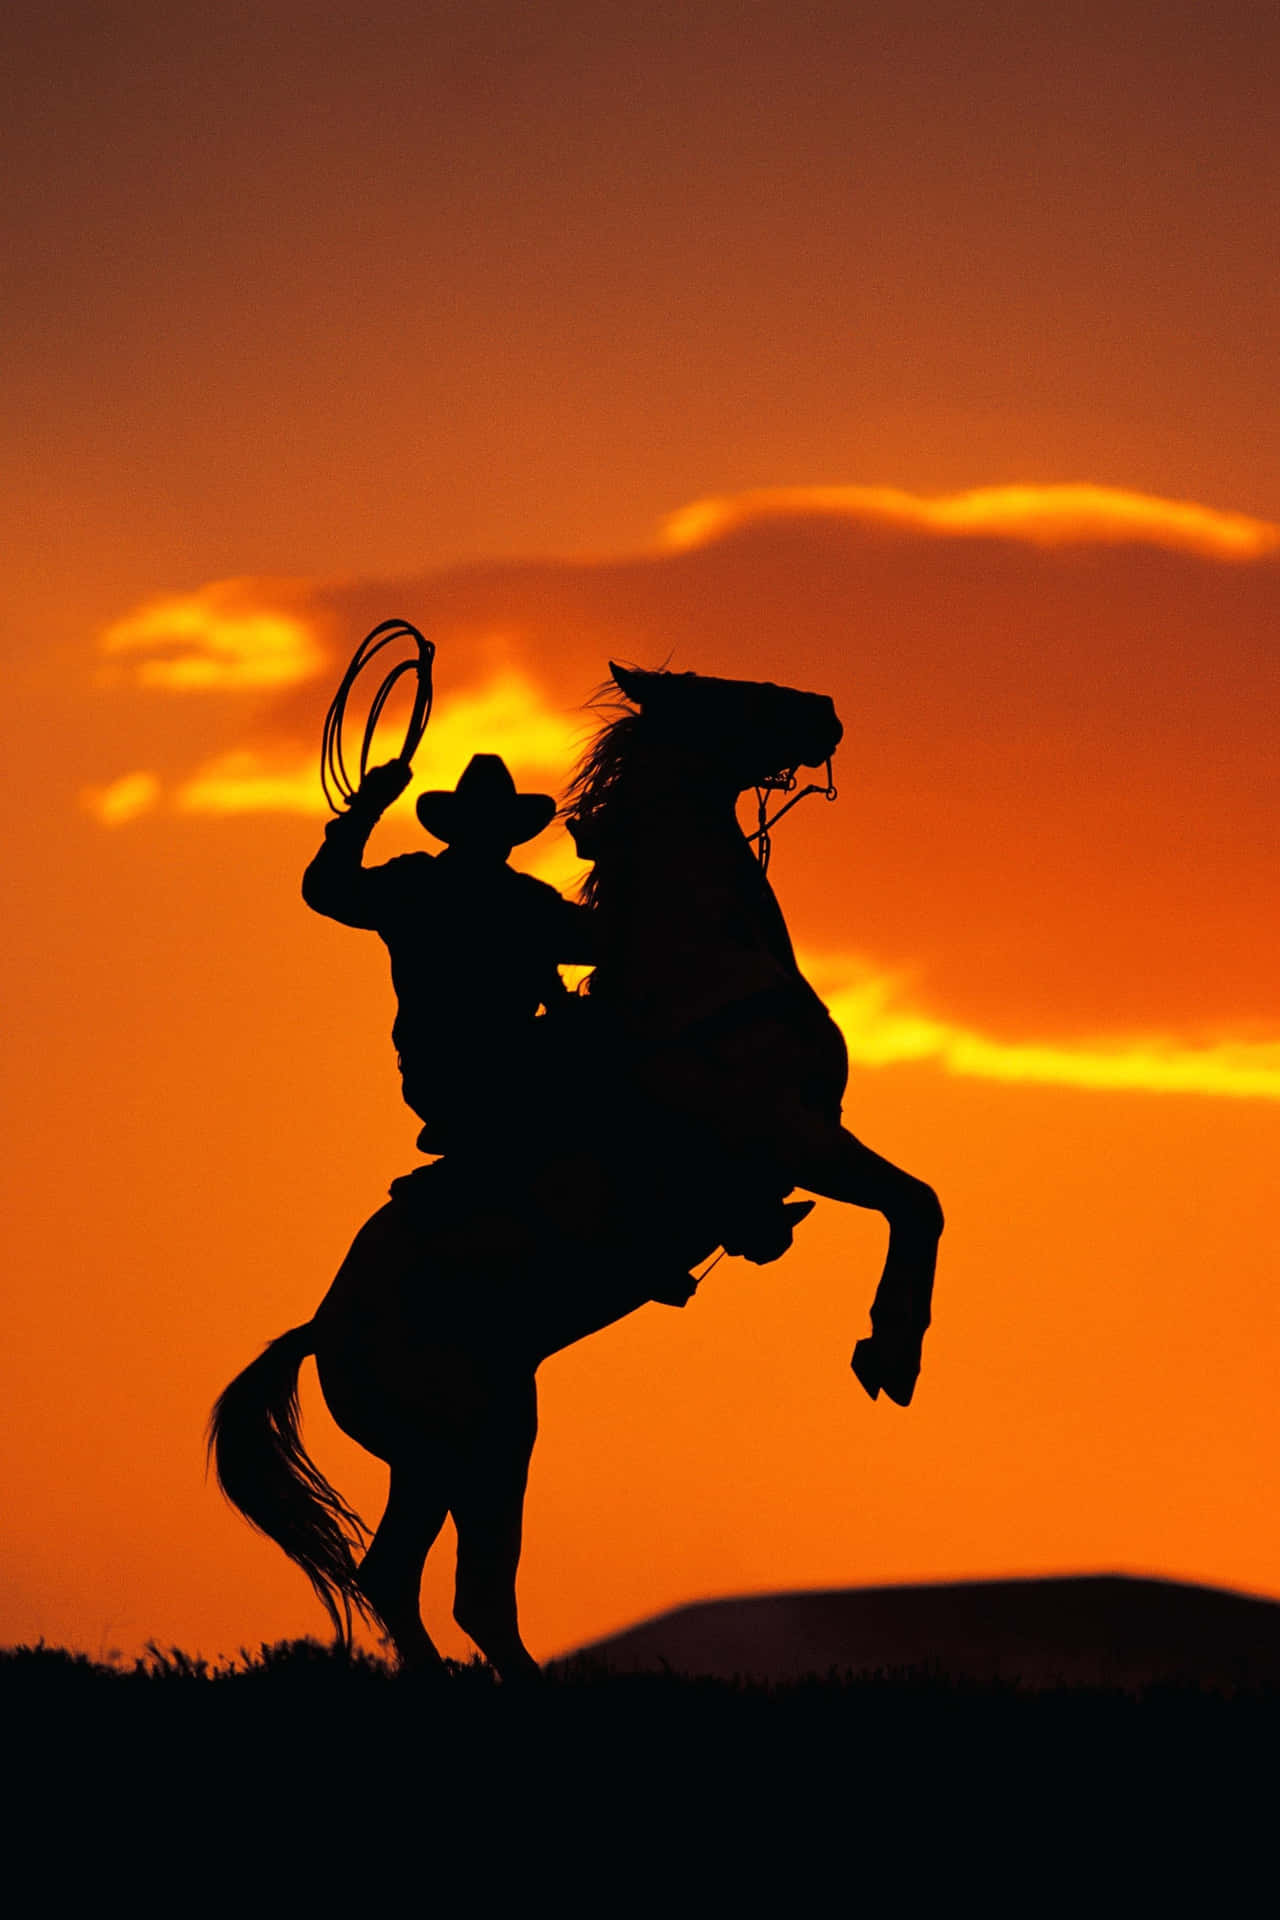 Cowboys riding horses at dusk